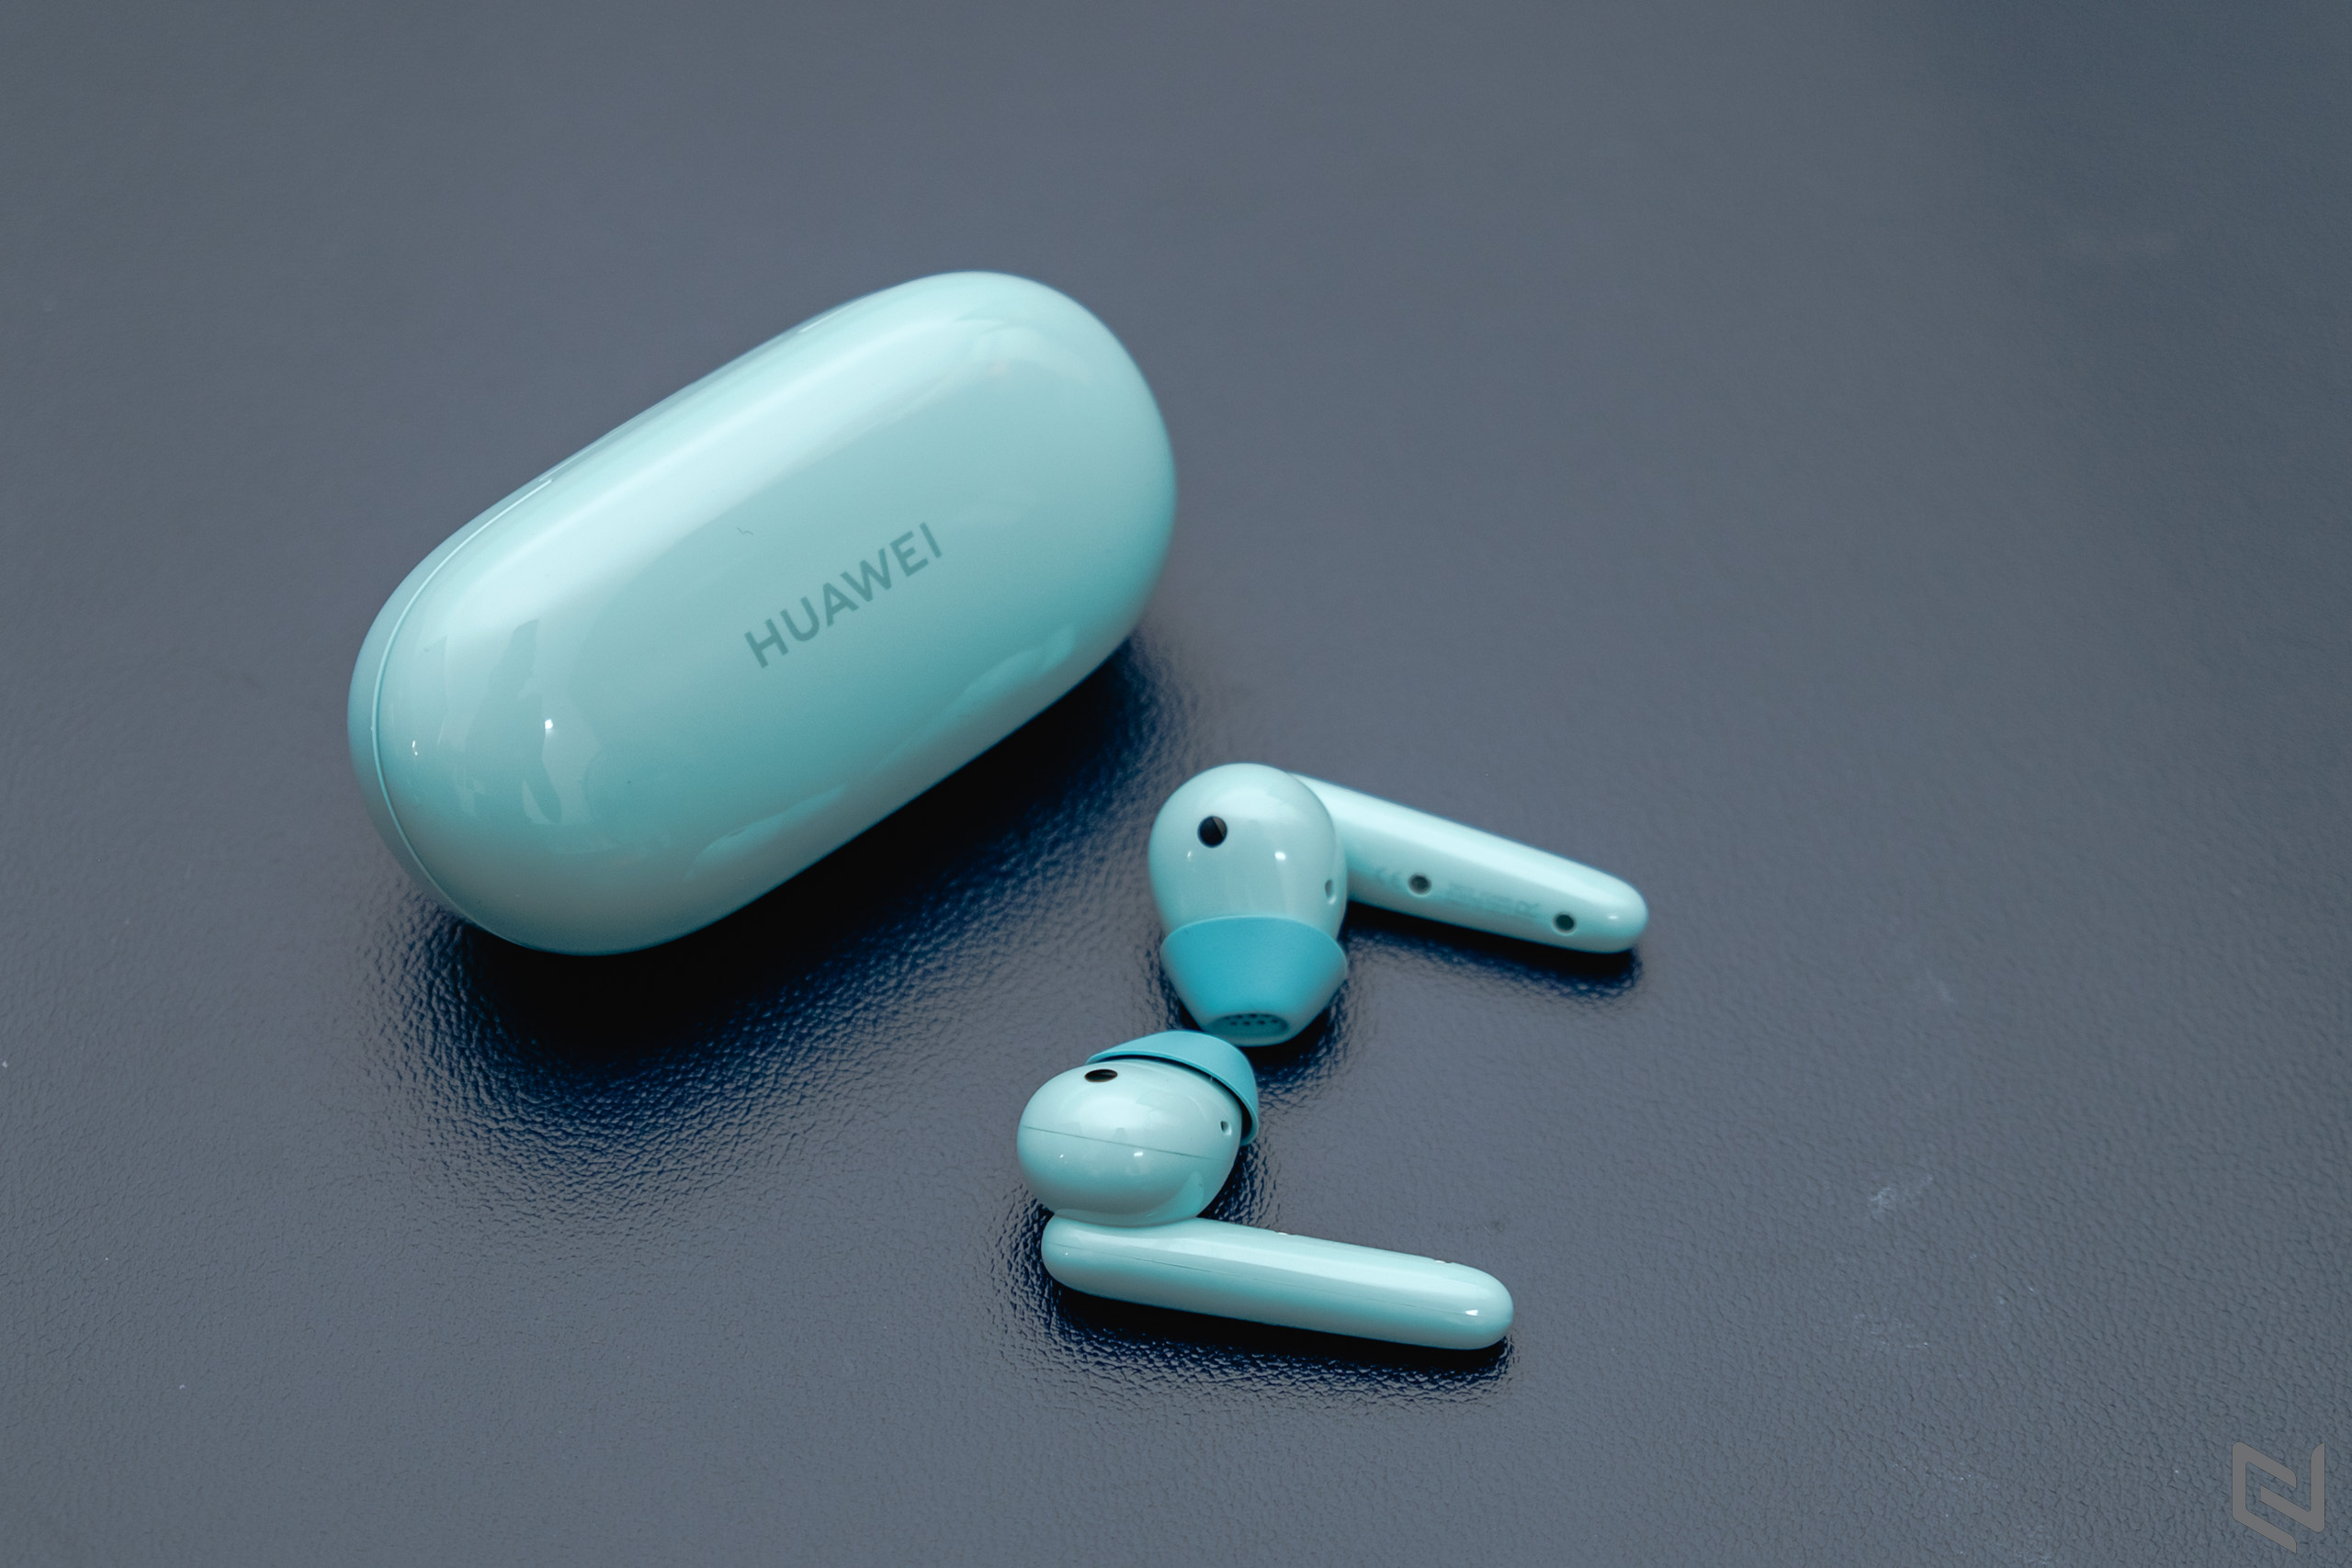 Đánh giá nhanh tai nghe Huawei Freebuds SE - Thiết kế đẹp, chất âm tốt, giá mềm